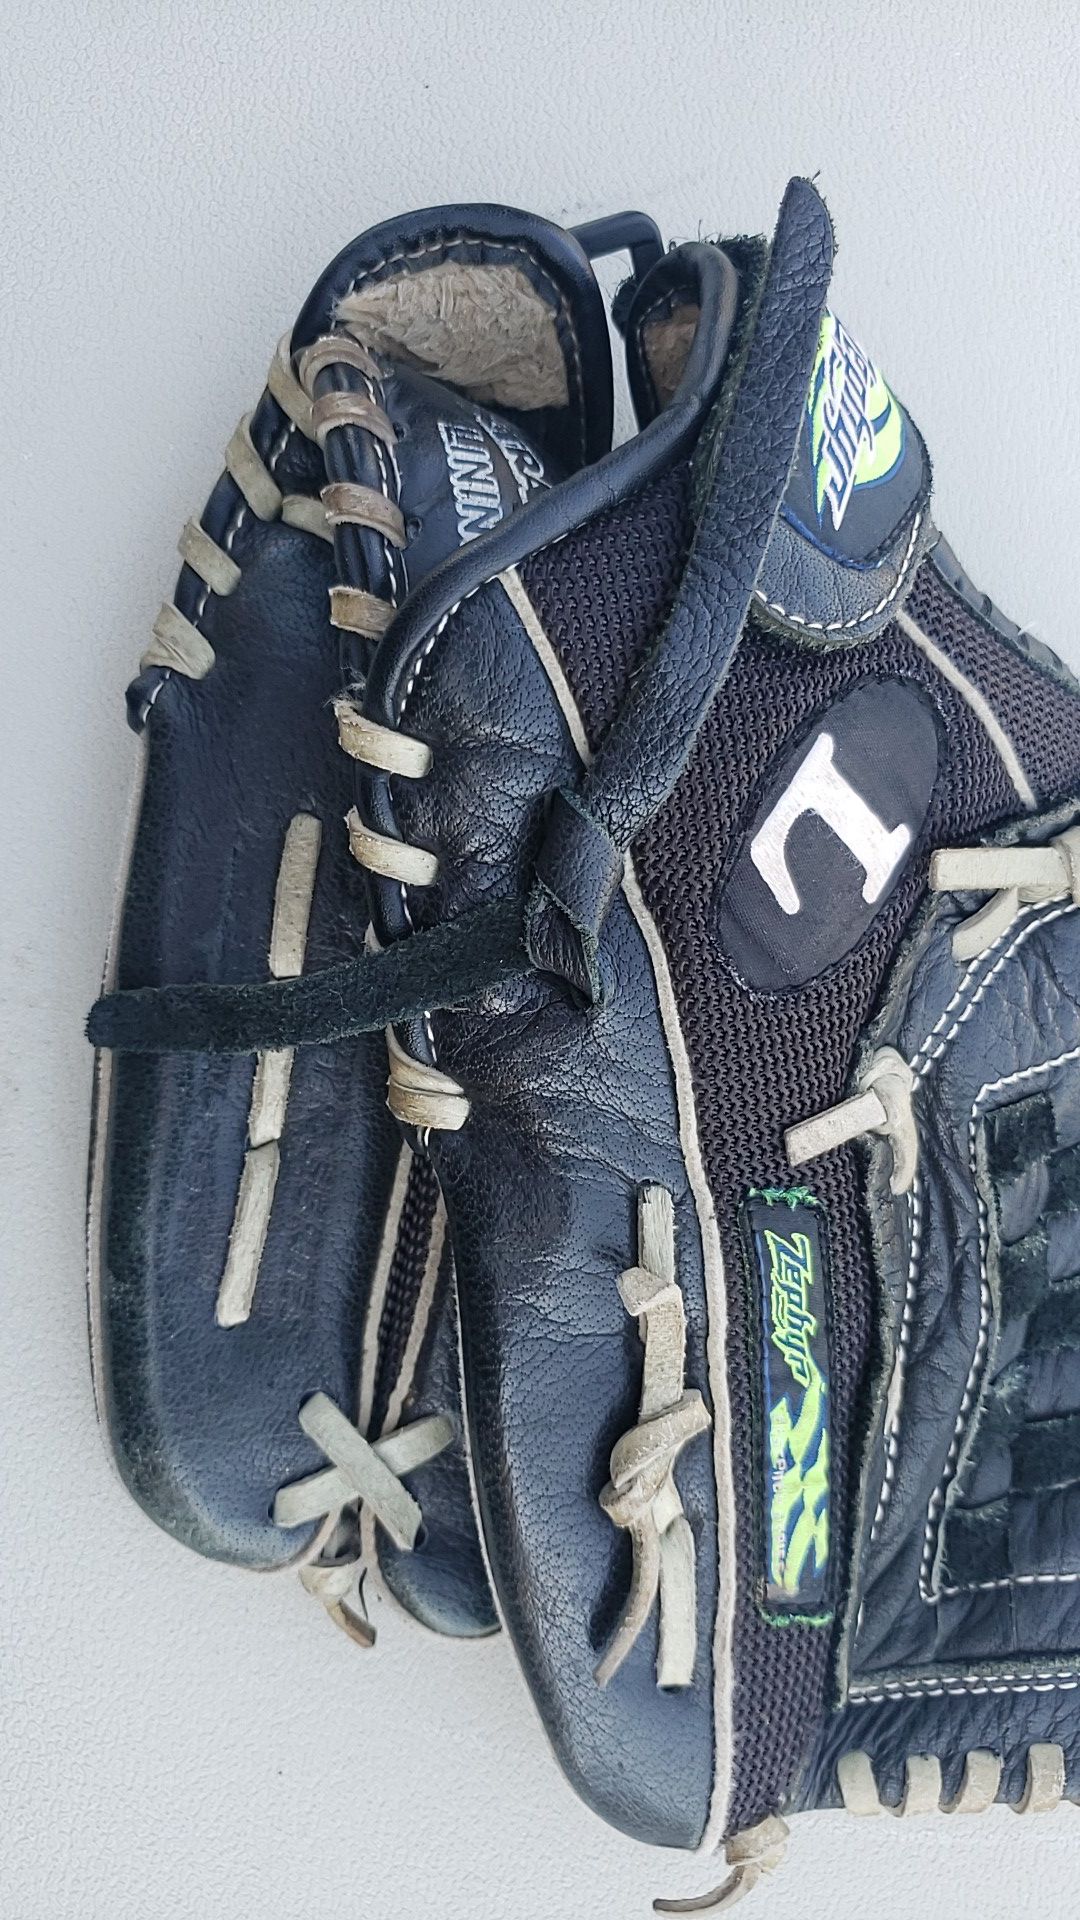 Baseball glove size 12